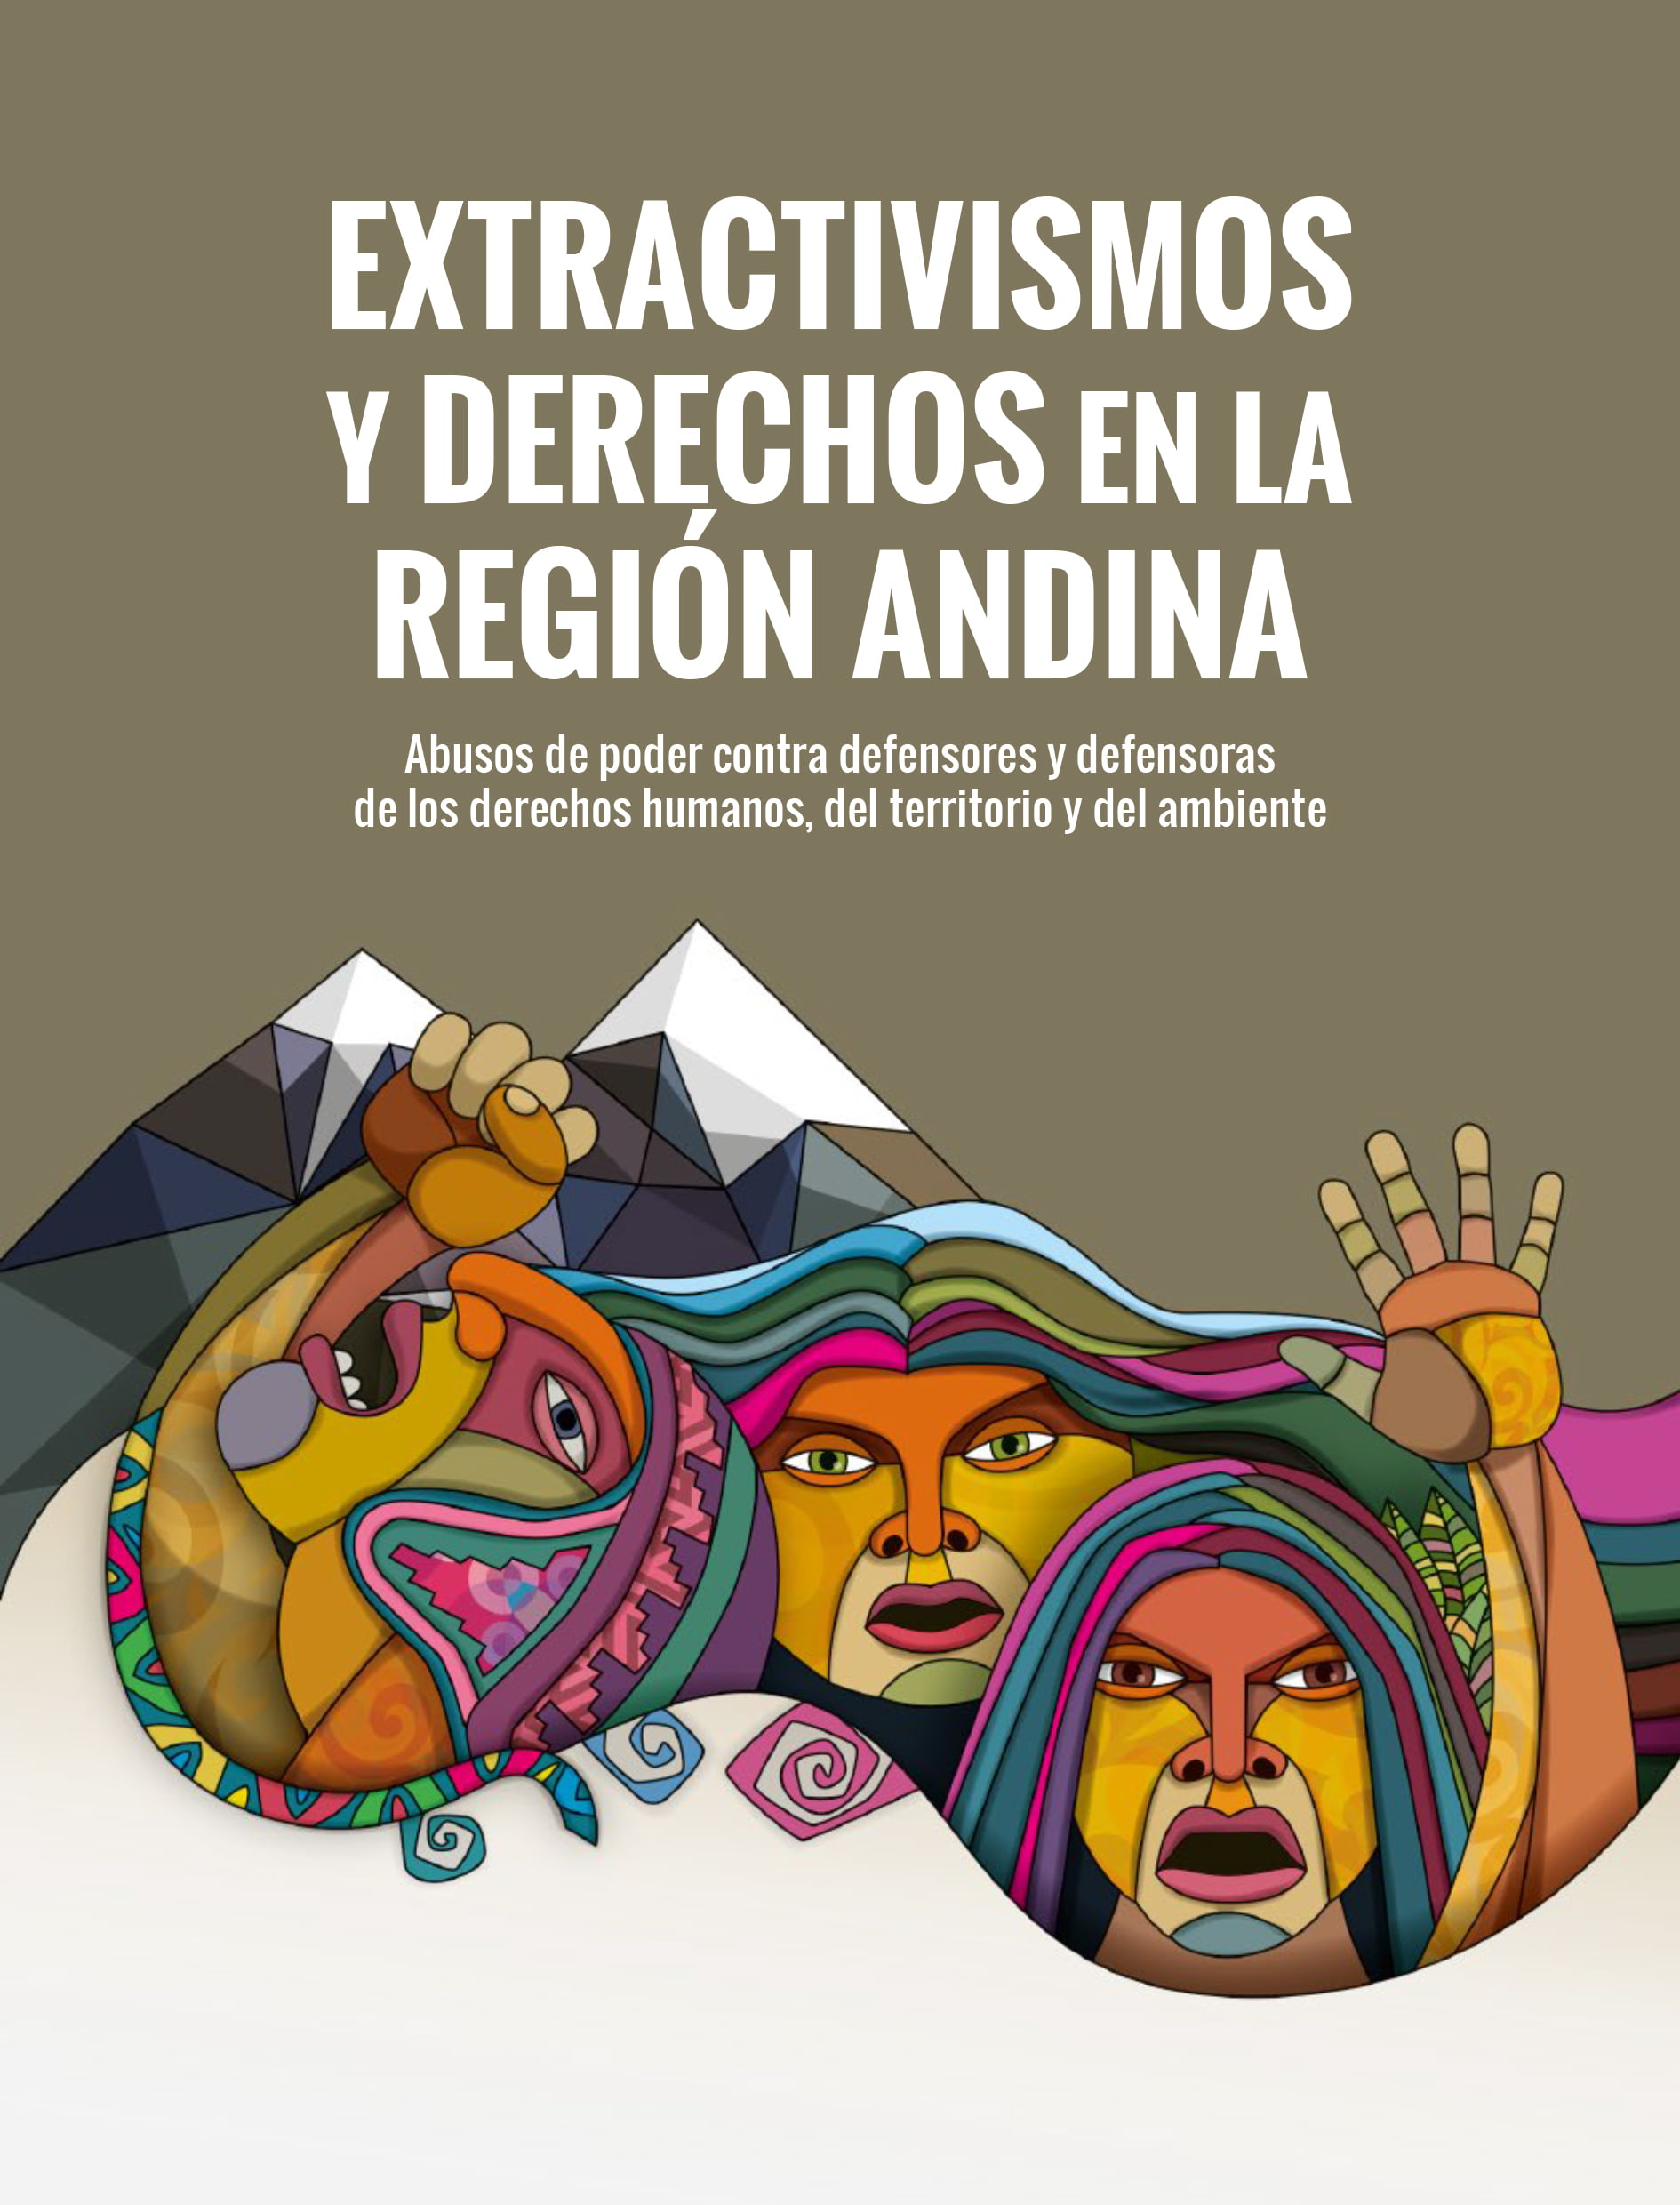 Extractivismo y derechos en la región andina: Abuso de poder contra defensores y defensoras de los derechos humanos, del territorio y del ambiente